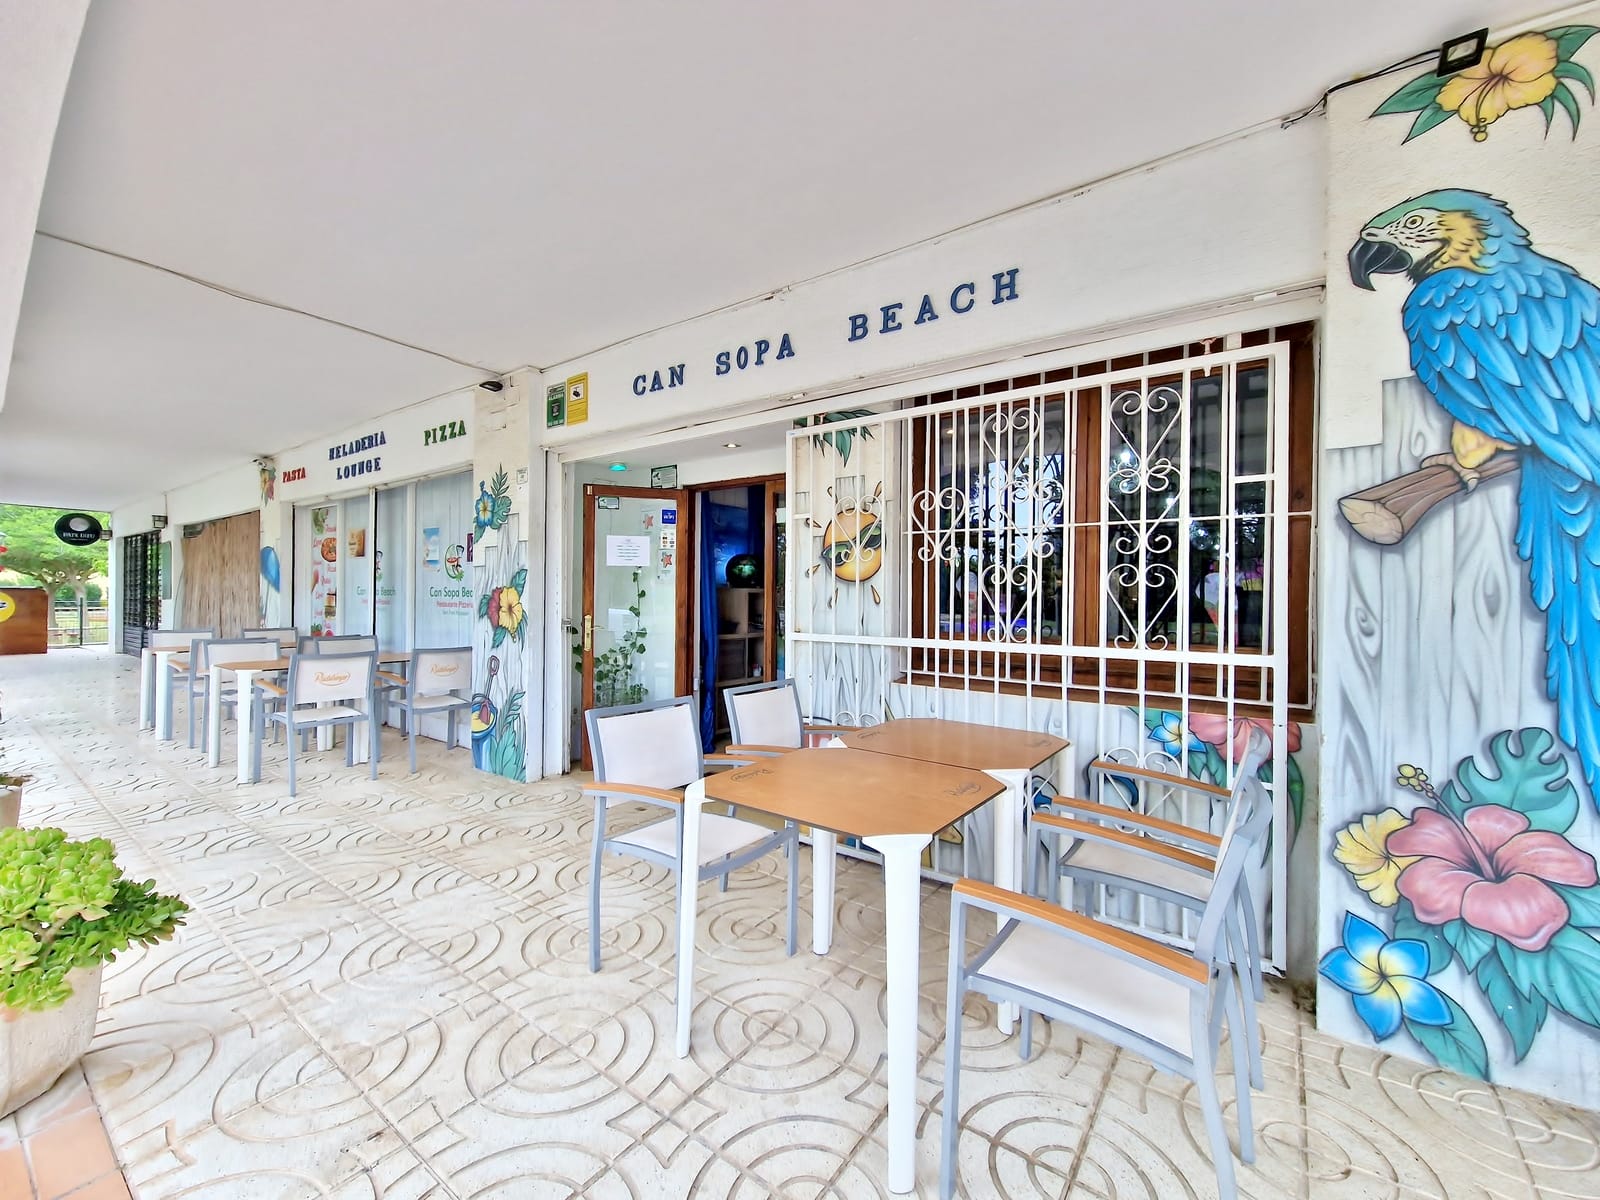 Exclusivitat St Pere Pescador – En venda parets + negoci, platja 350m